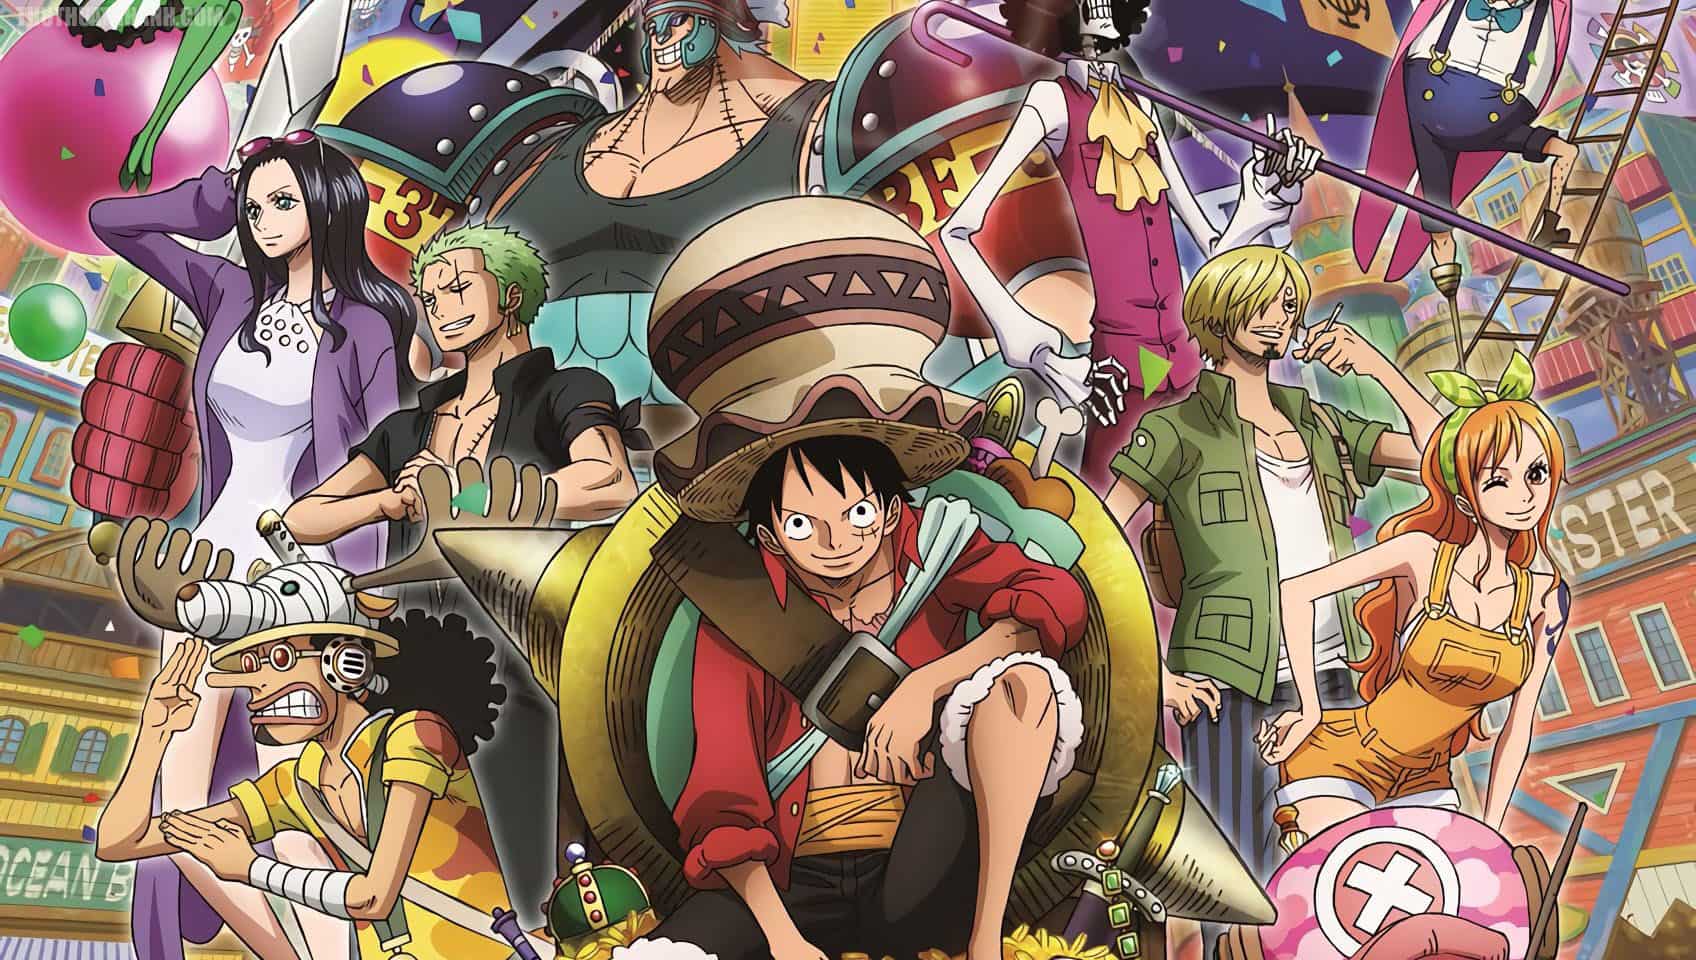 Hình One Piece Wano rất đẹp độc kỳ lạ nhất